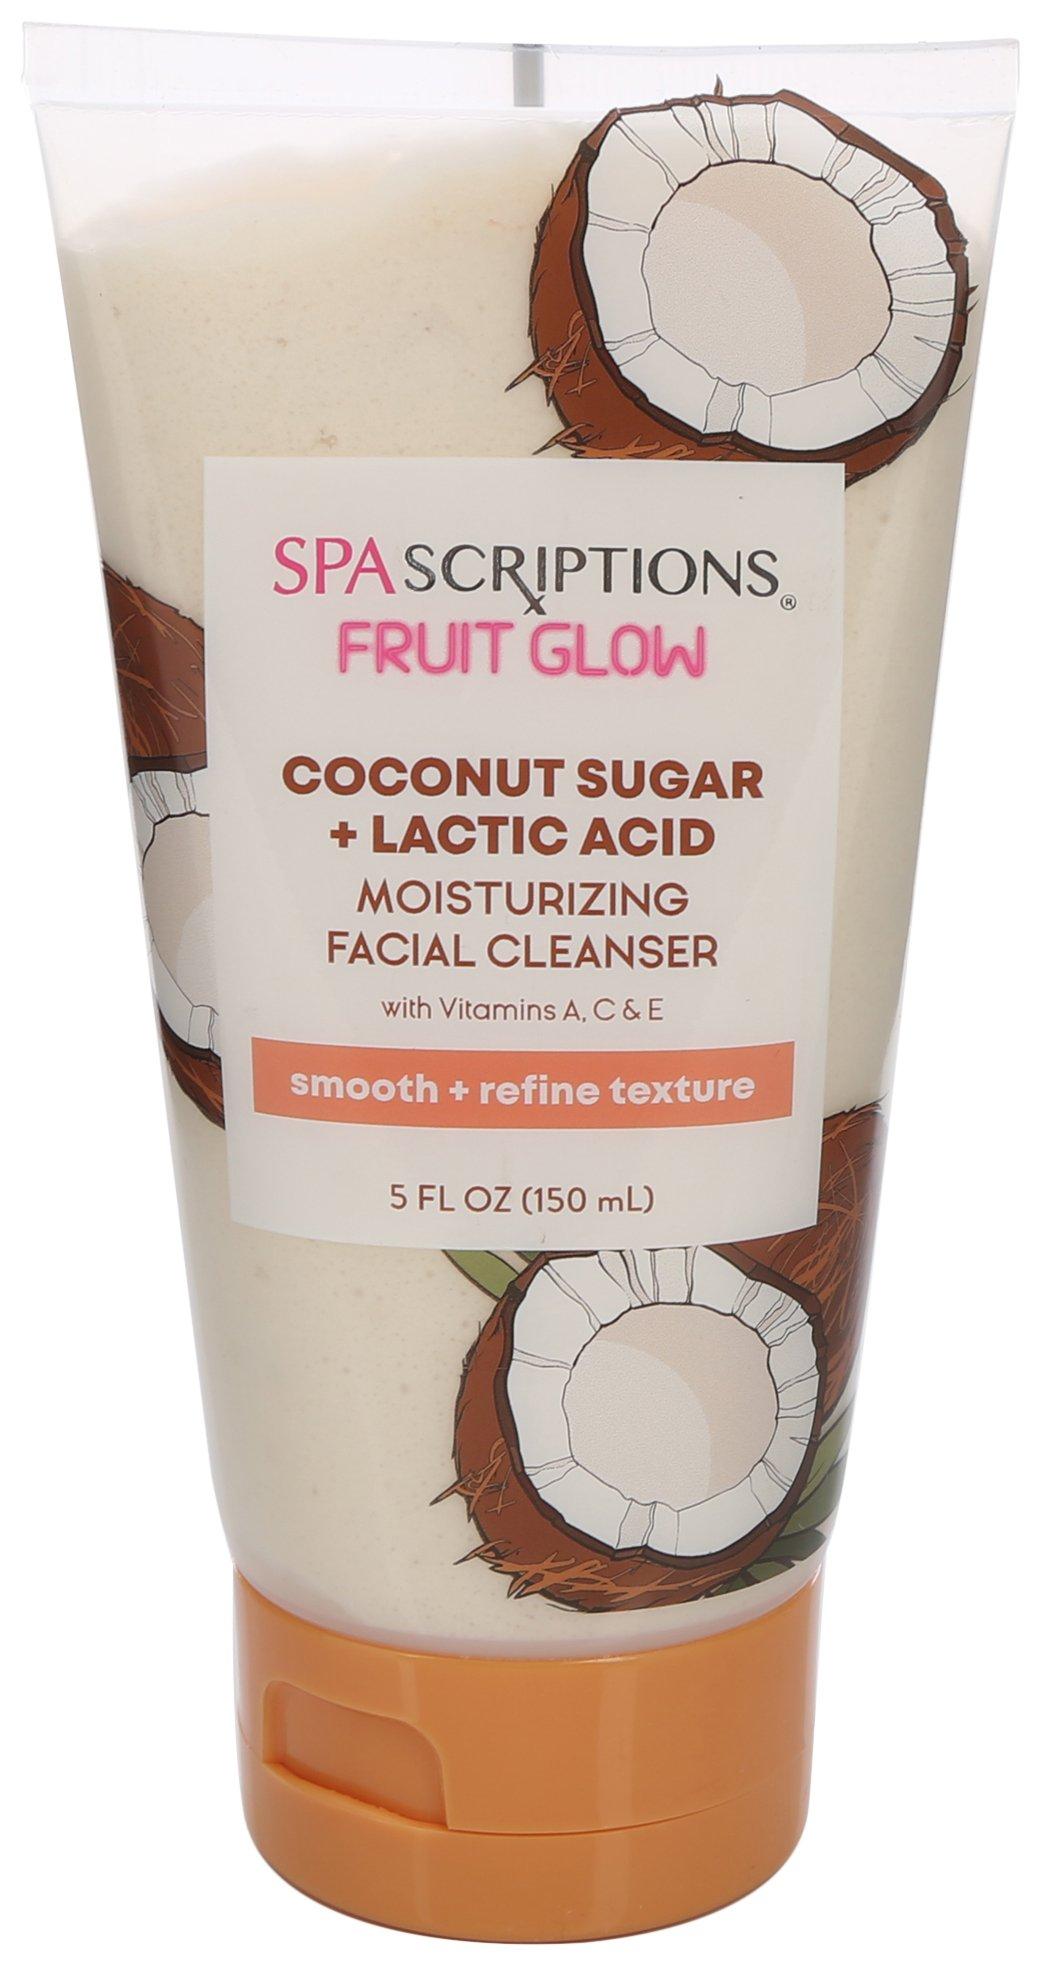 Spascriptions 5 Fl.Oz. Fruit Glow Facial Cleanser